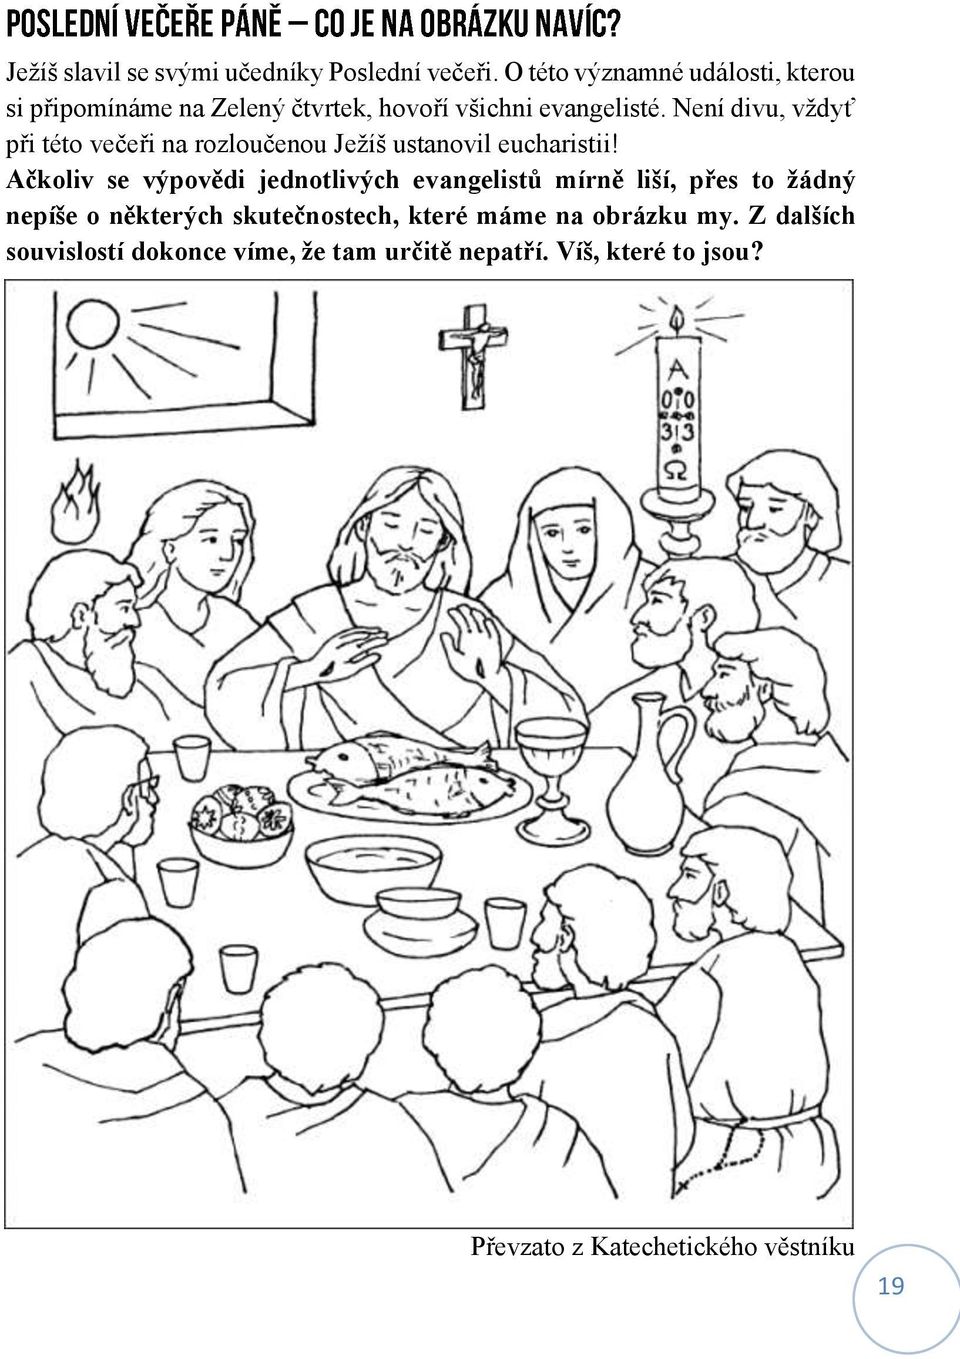 Není divu, vždyť při této večeři na rozloučenou Ježíš ustanovil eucharistii!